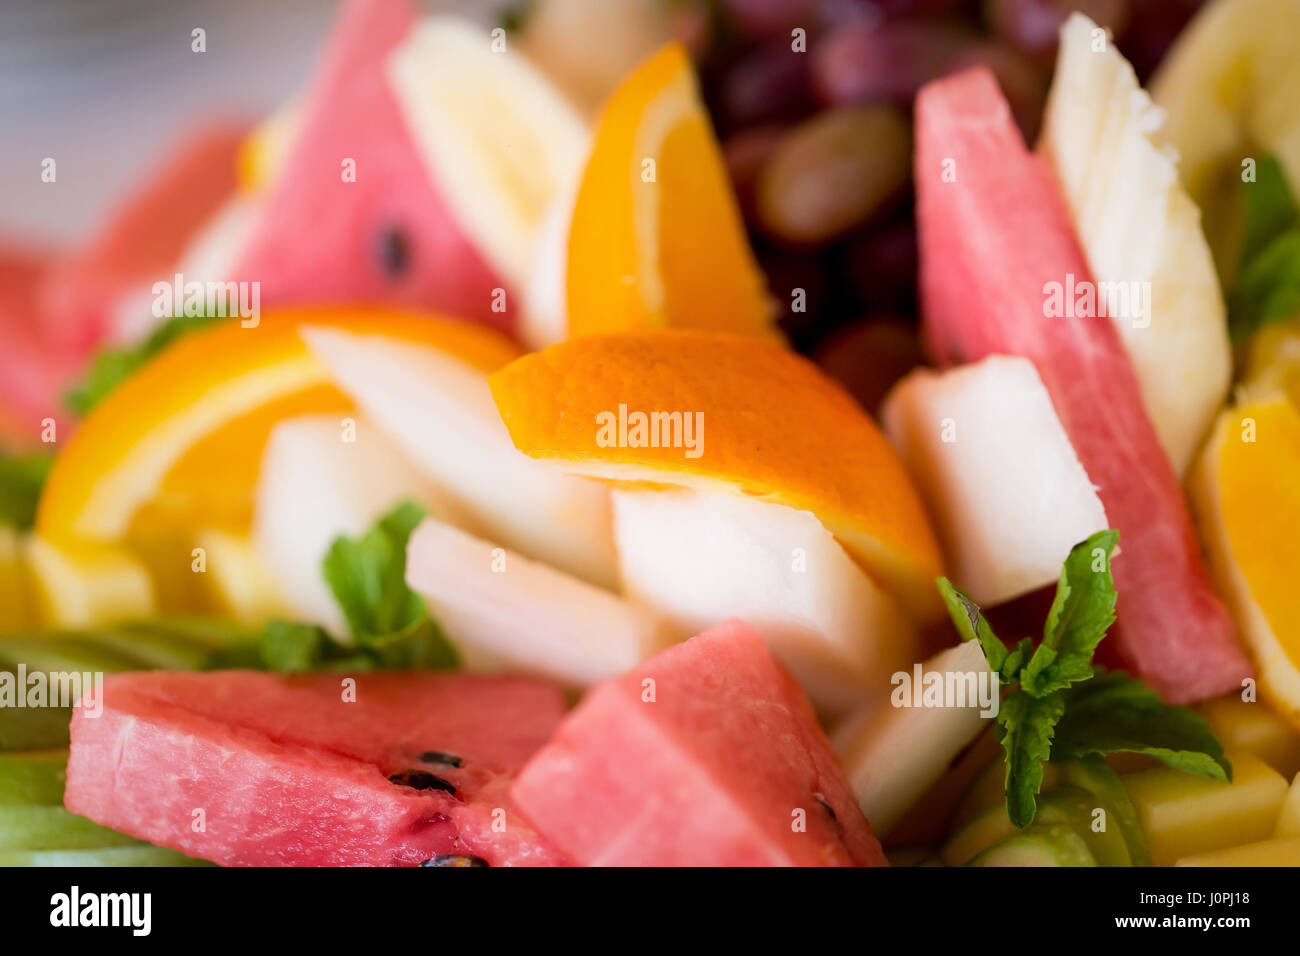 Juteuse et salade de fruits frais Partie des bâtons. Salade de